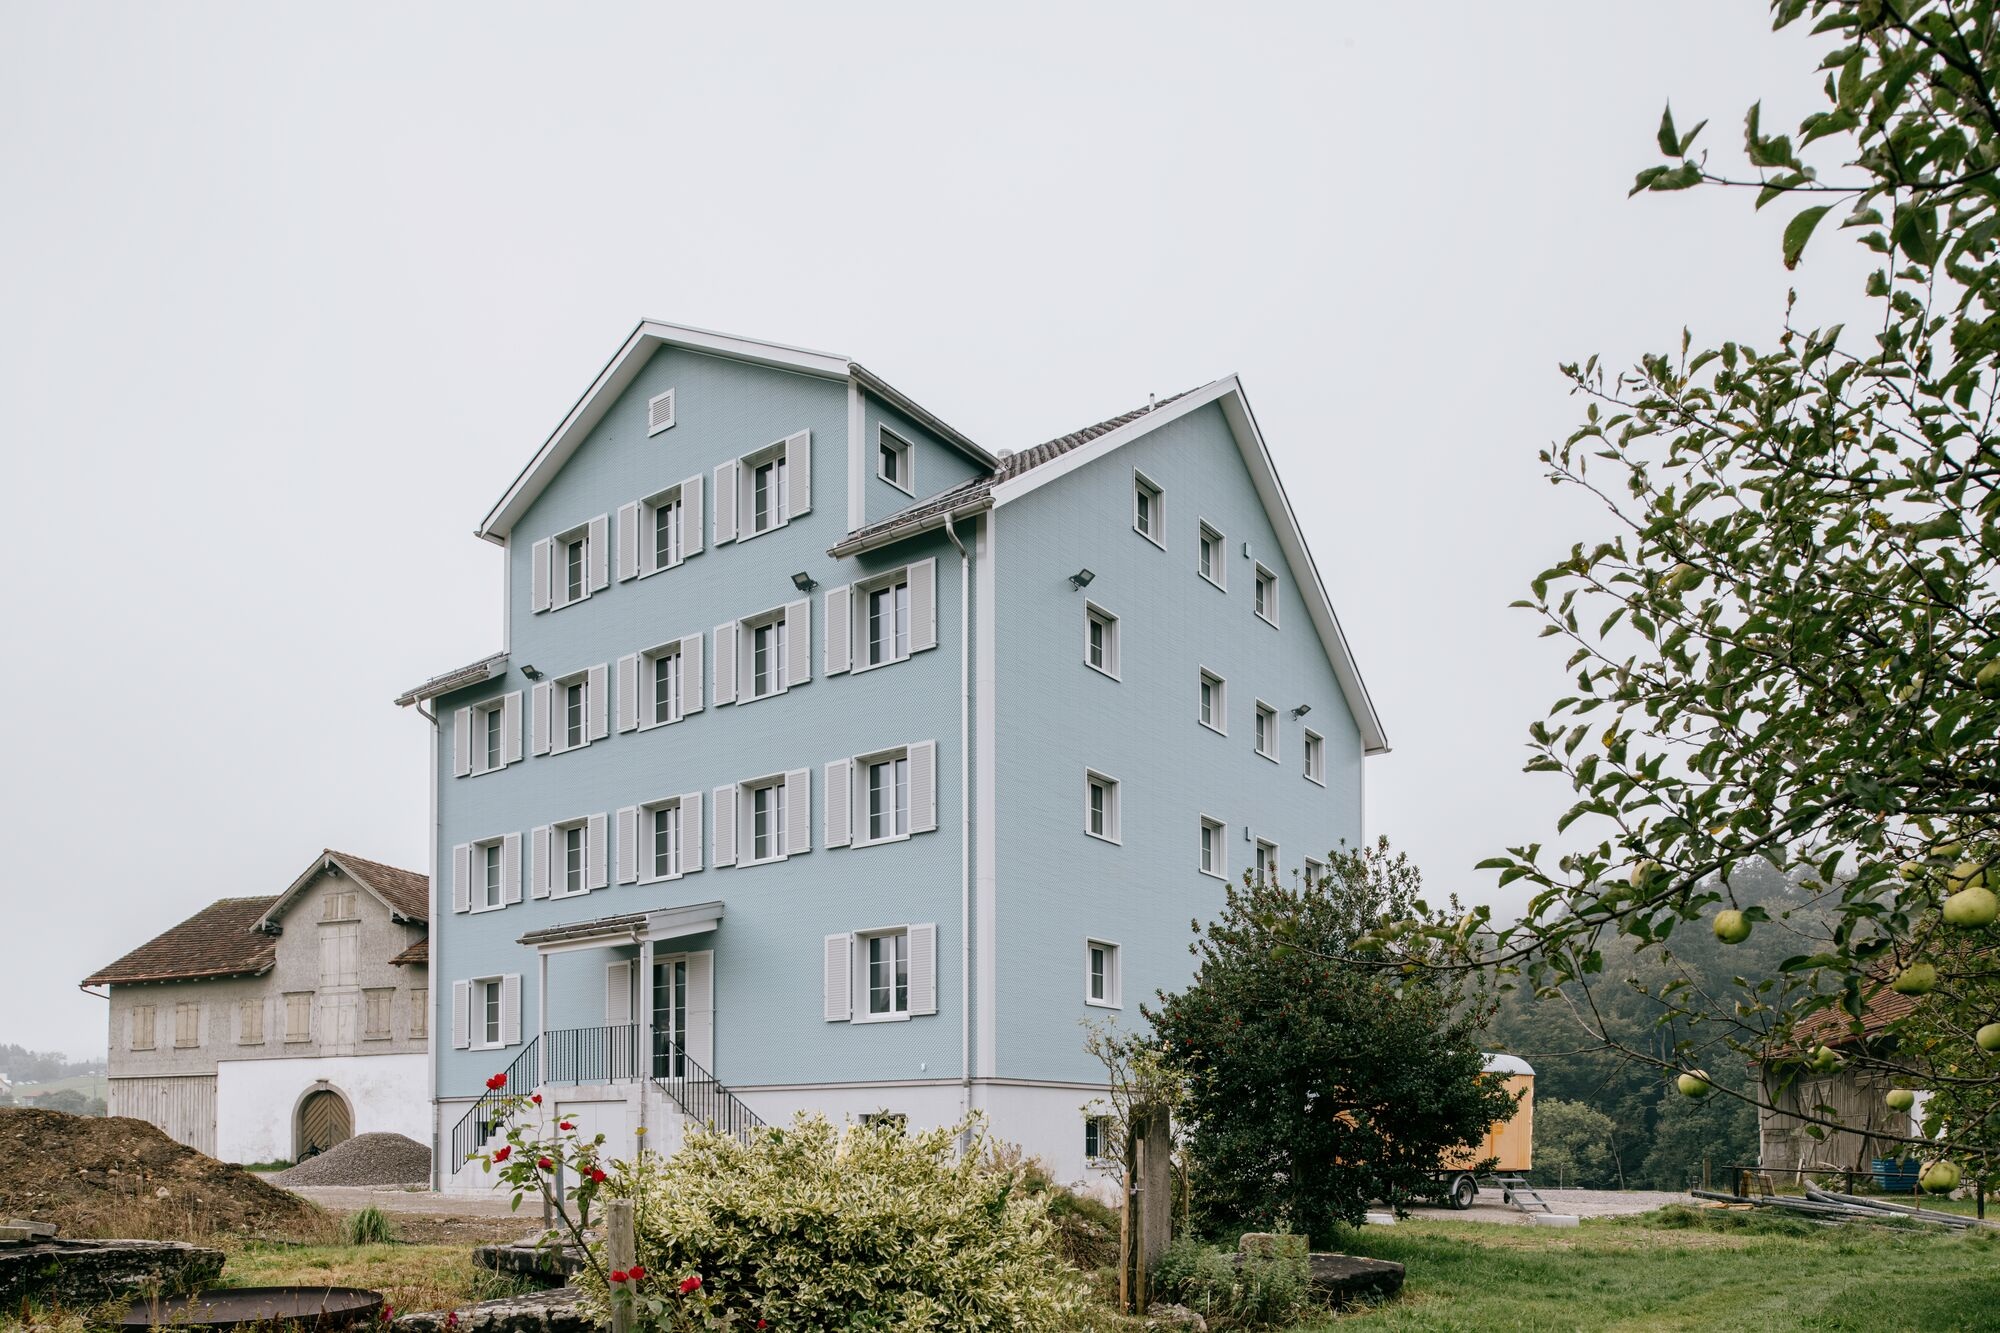 Viergeschossiges Mehrfamilienhaus mit hellblauer Eternit-Fassade